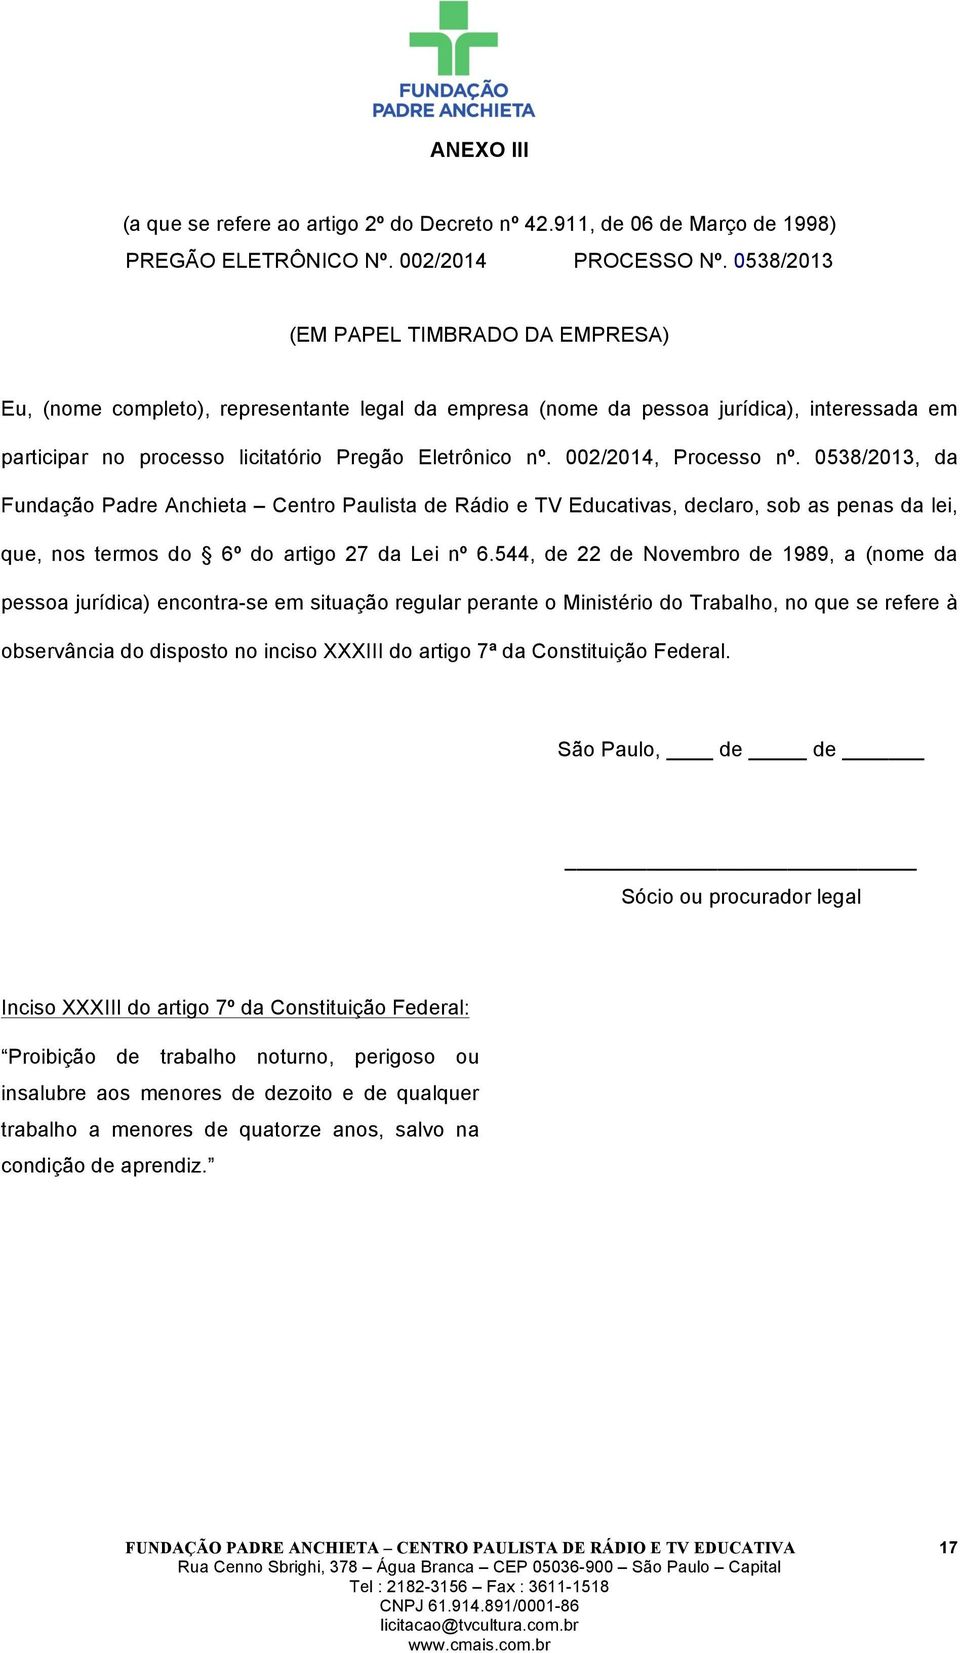 002/2014, Processo nº. 0538/2013, da Fundação Padre Anchieta Centro Paulista de Rádio e TV Educativas, declaro, sob as penas da lei, que, nos termos do 6º do artigo 27 da Lei nº 6.